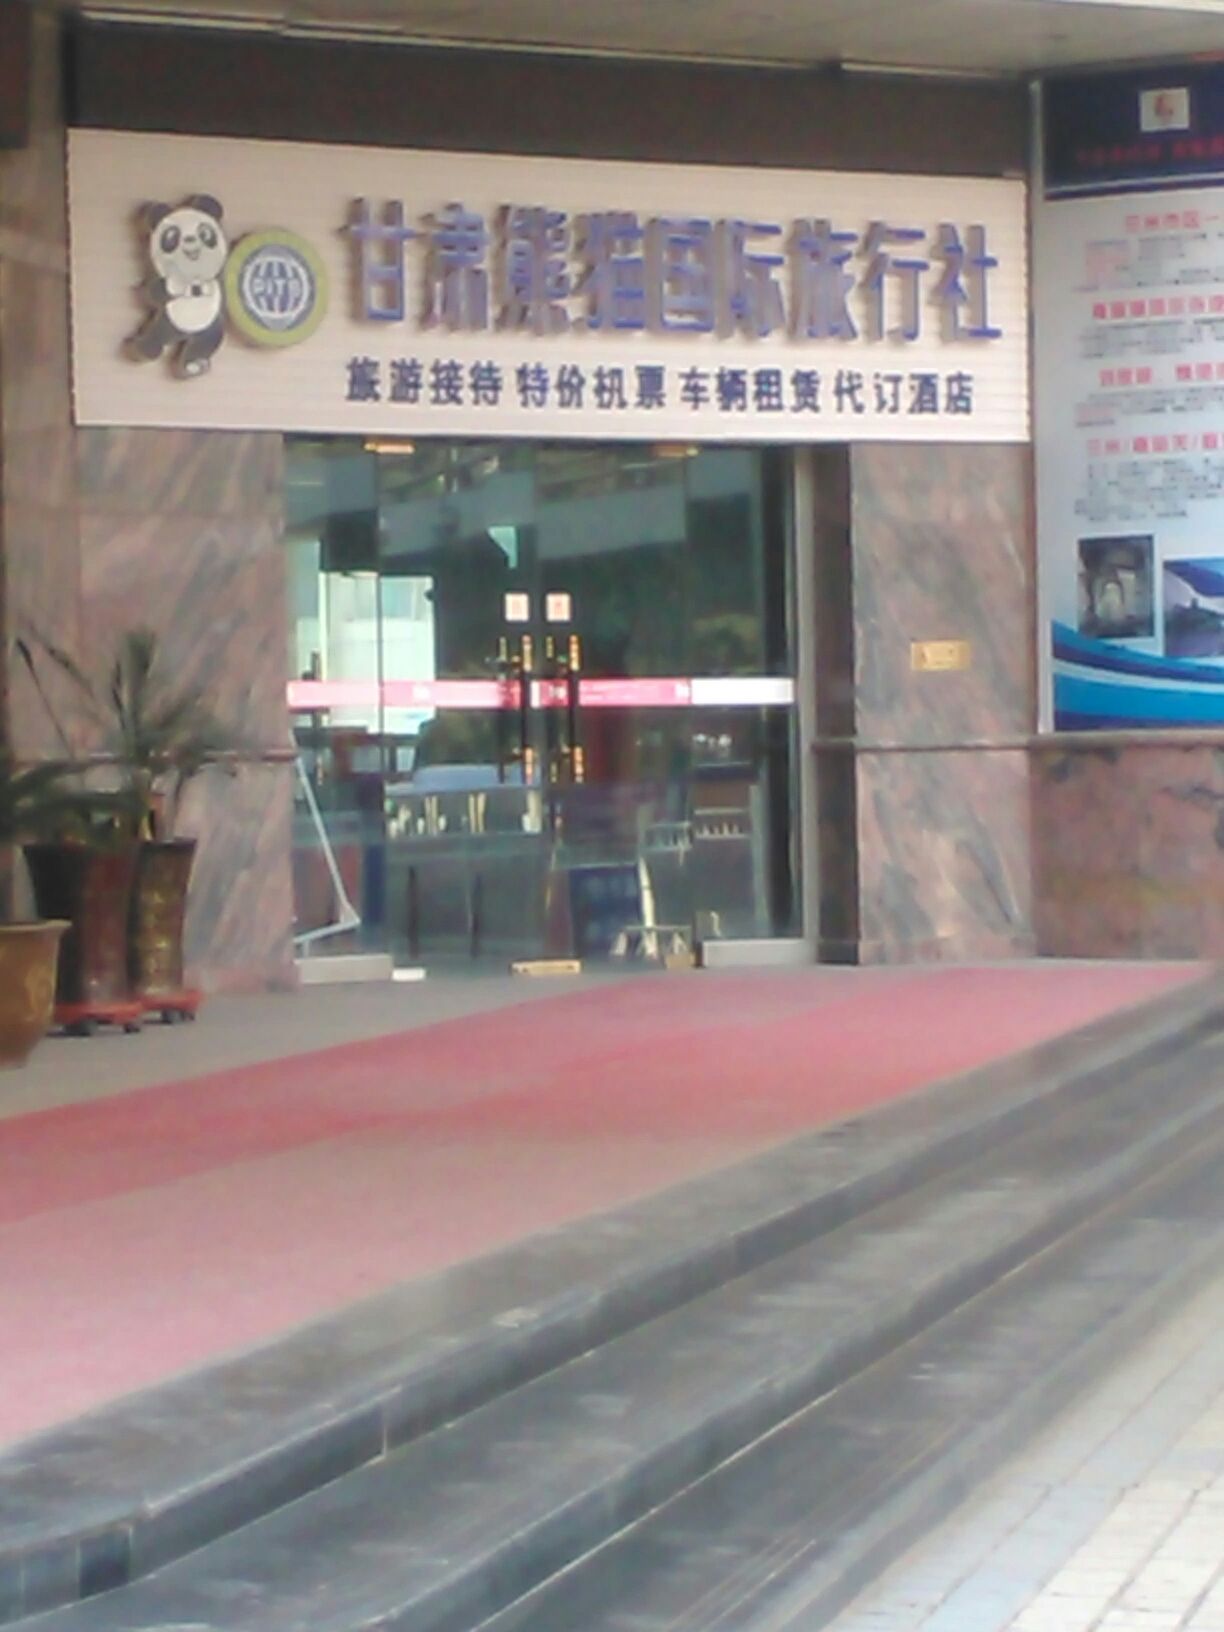 甘肅熊貓國際旅行社